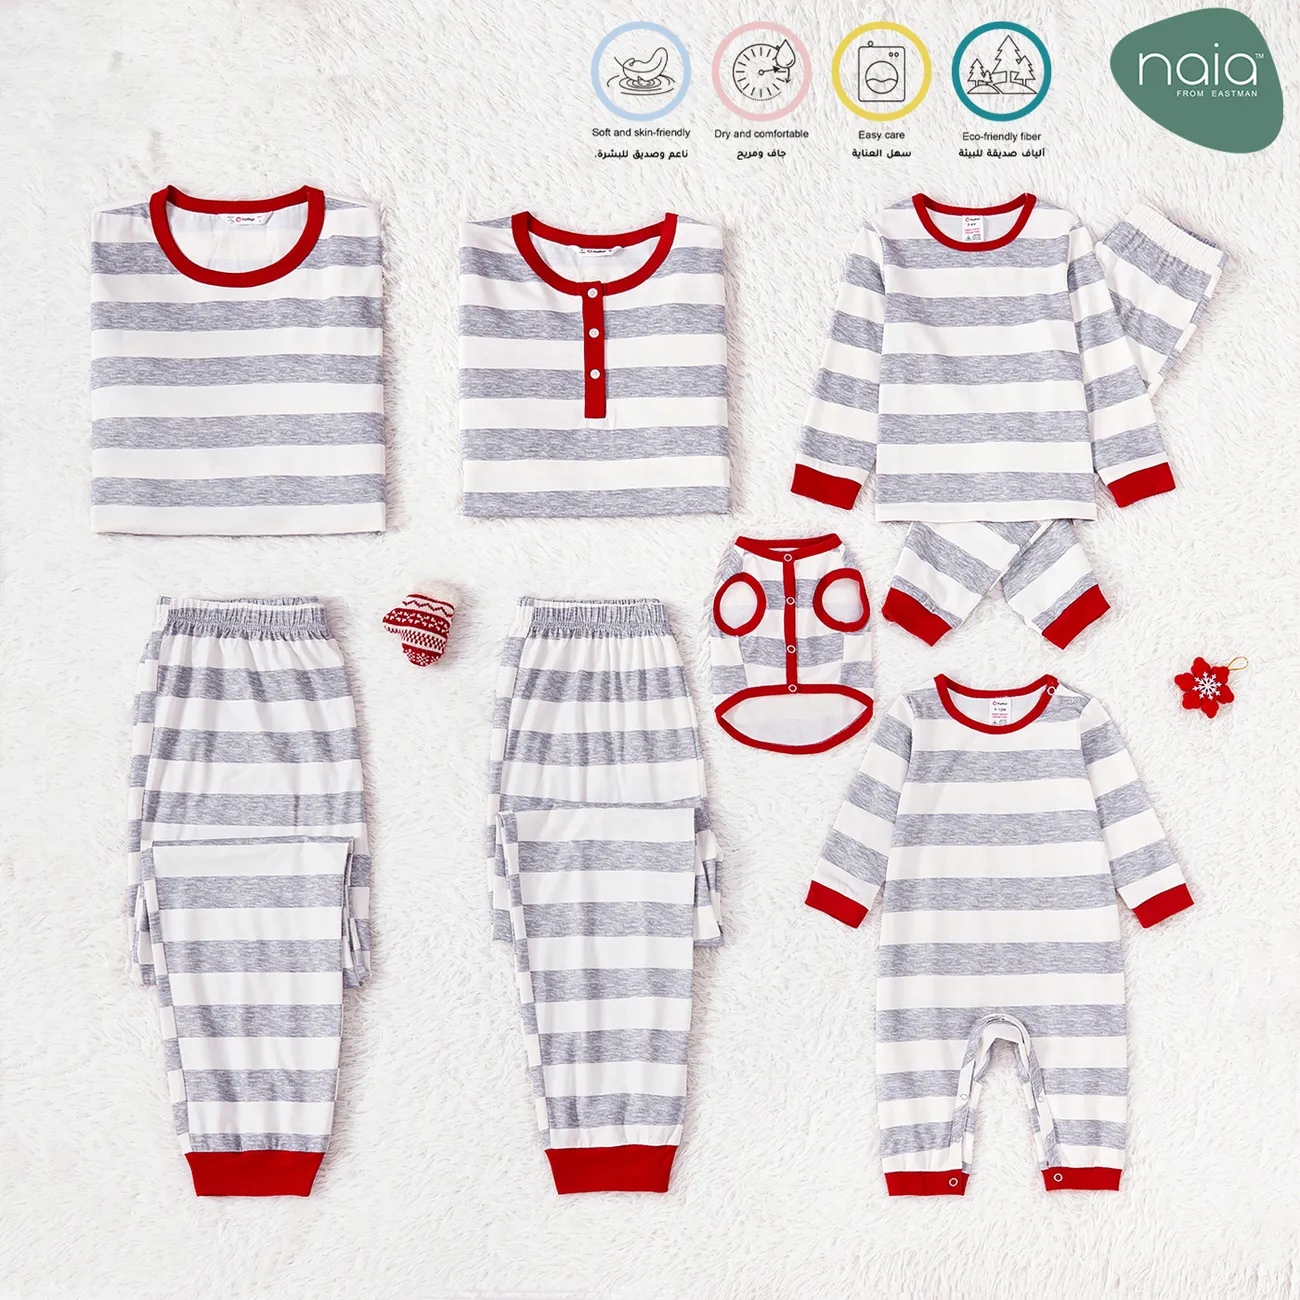 Natal Look de família Manga comprida Conjuntos de roupa para a família Pijamas (Flame Resistant) meio big image 1